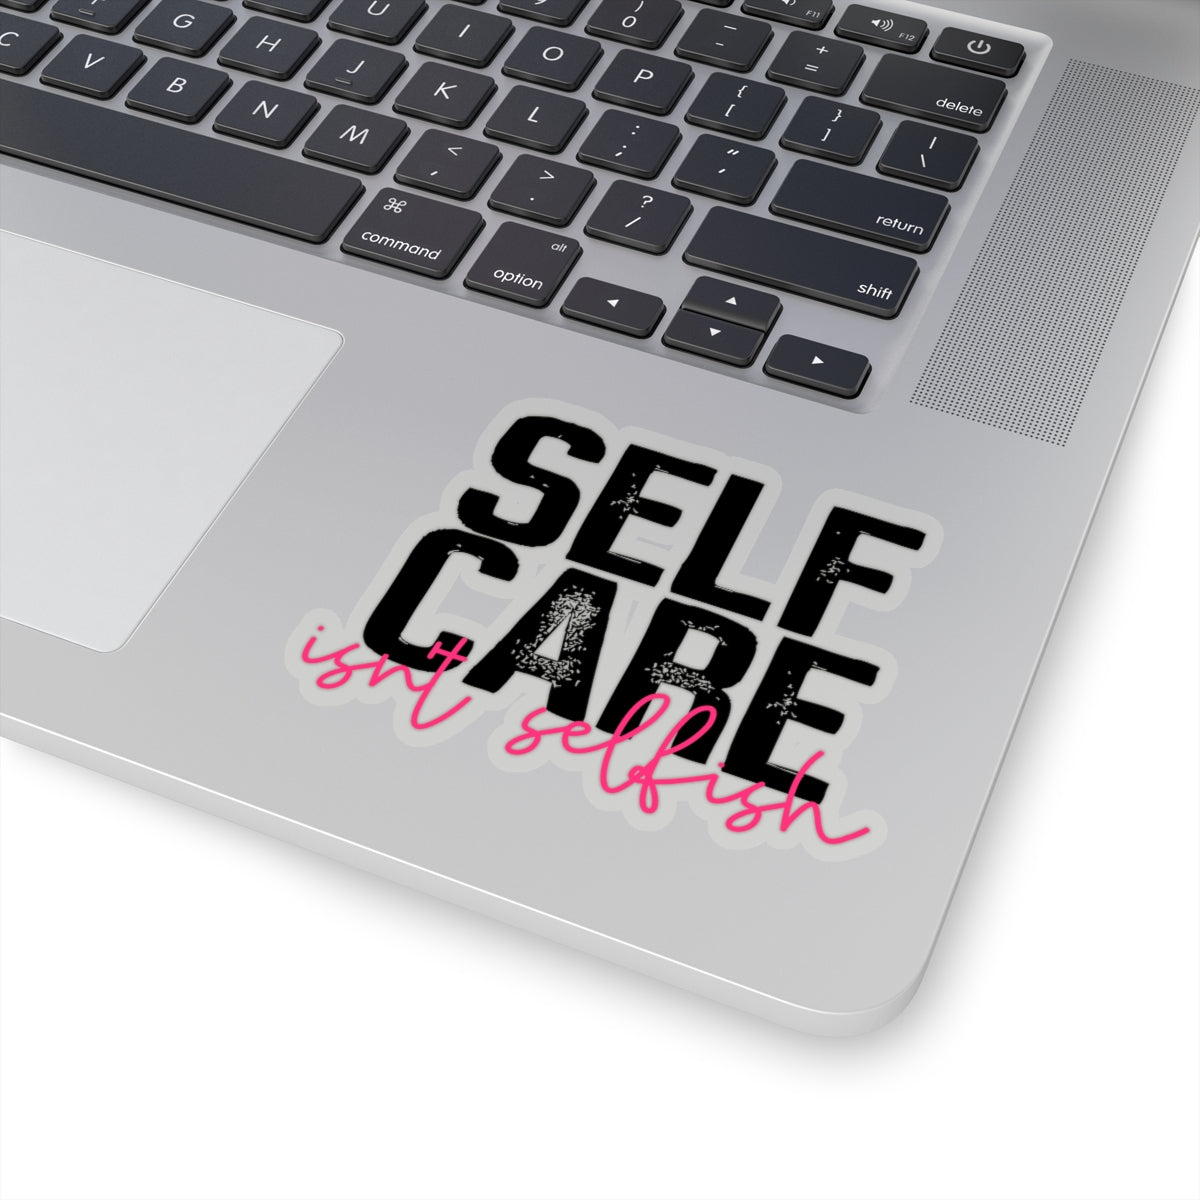 Self Care Isn't Selfish Sticker